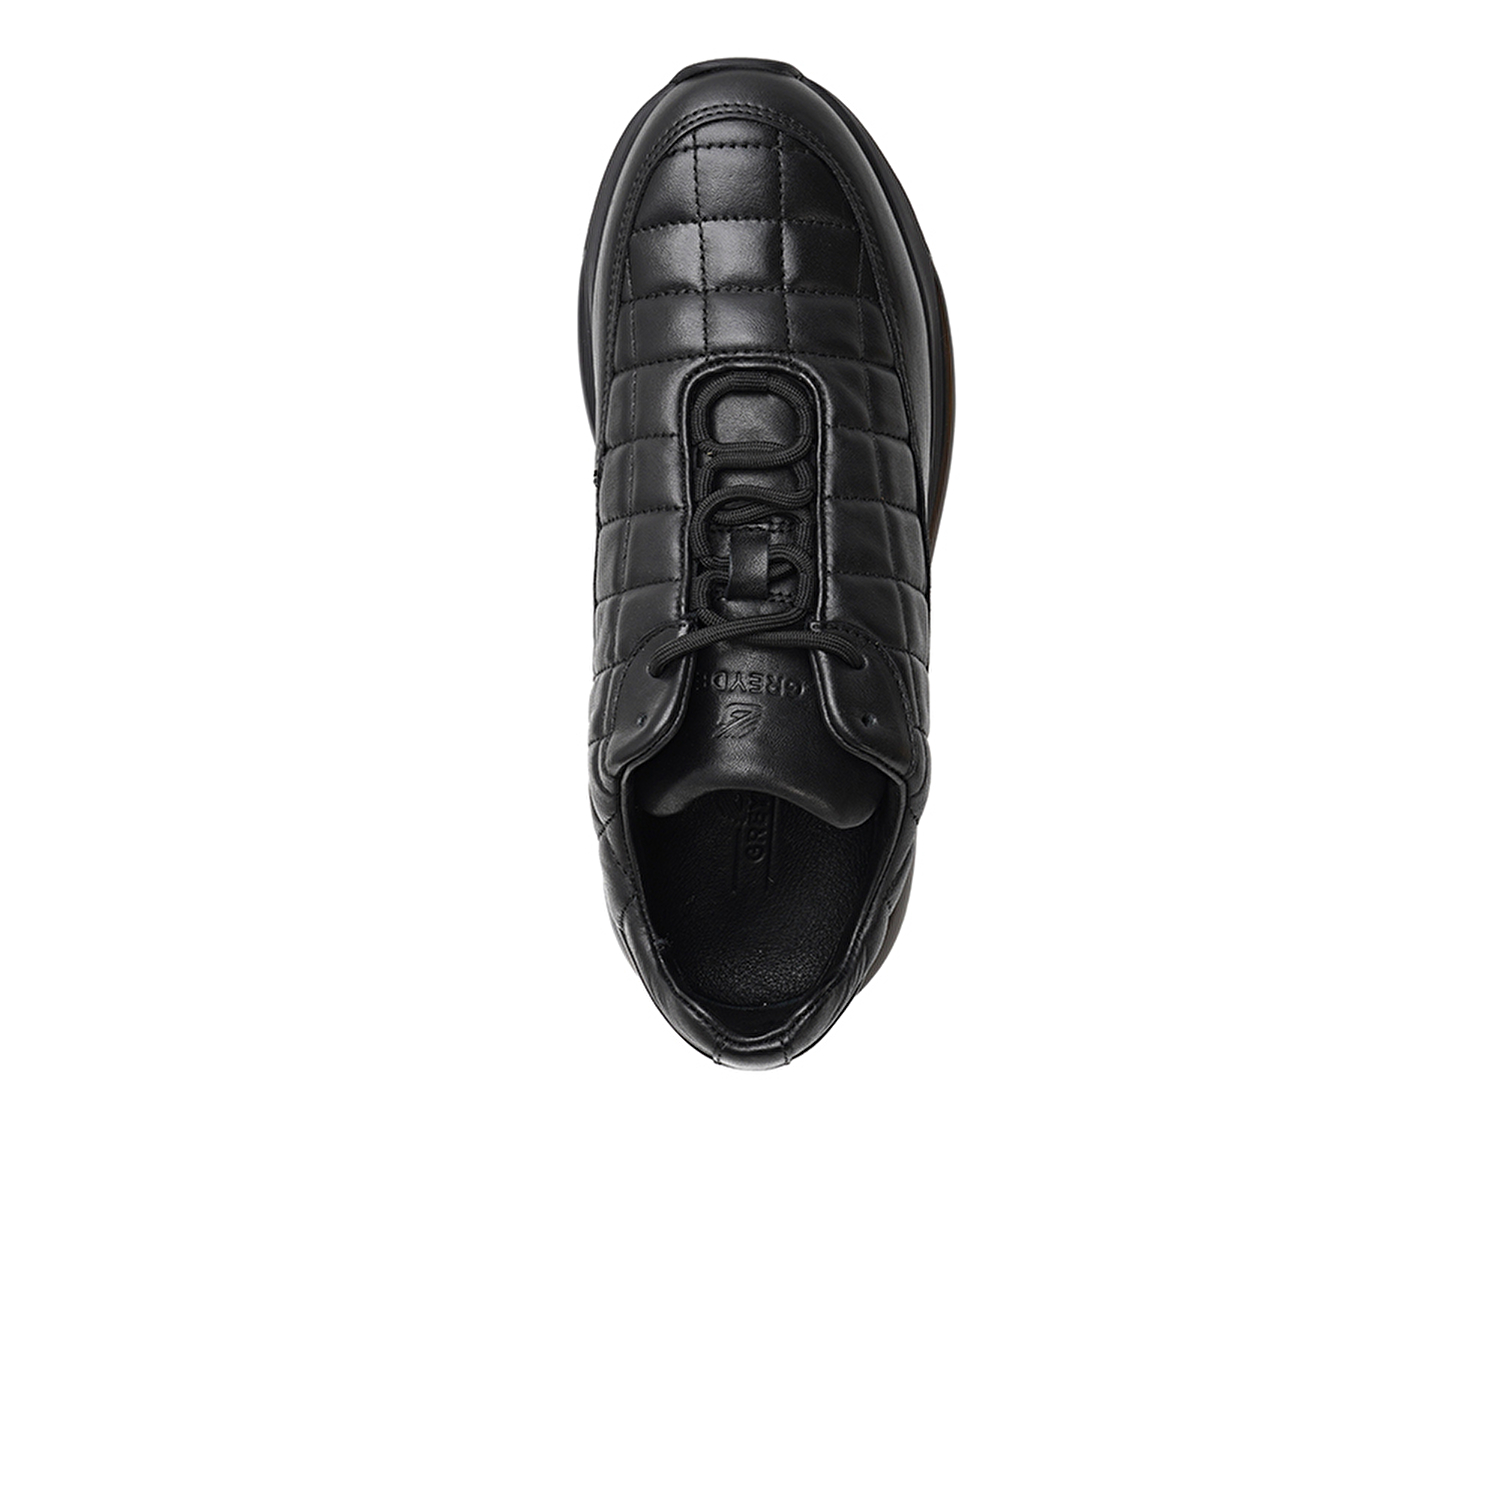 Büyük Beden Erkek Siyah Hakiki Deri Spor Ayakkabı 3K1SA14732L-3